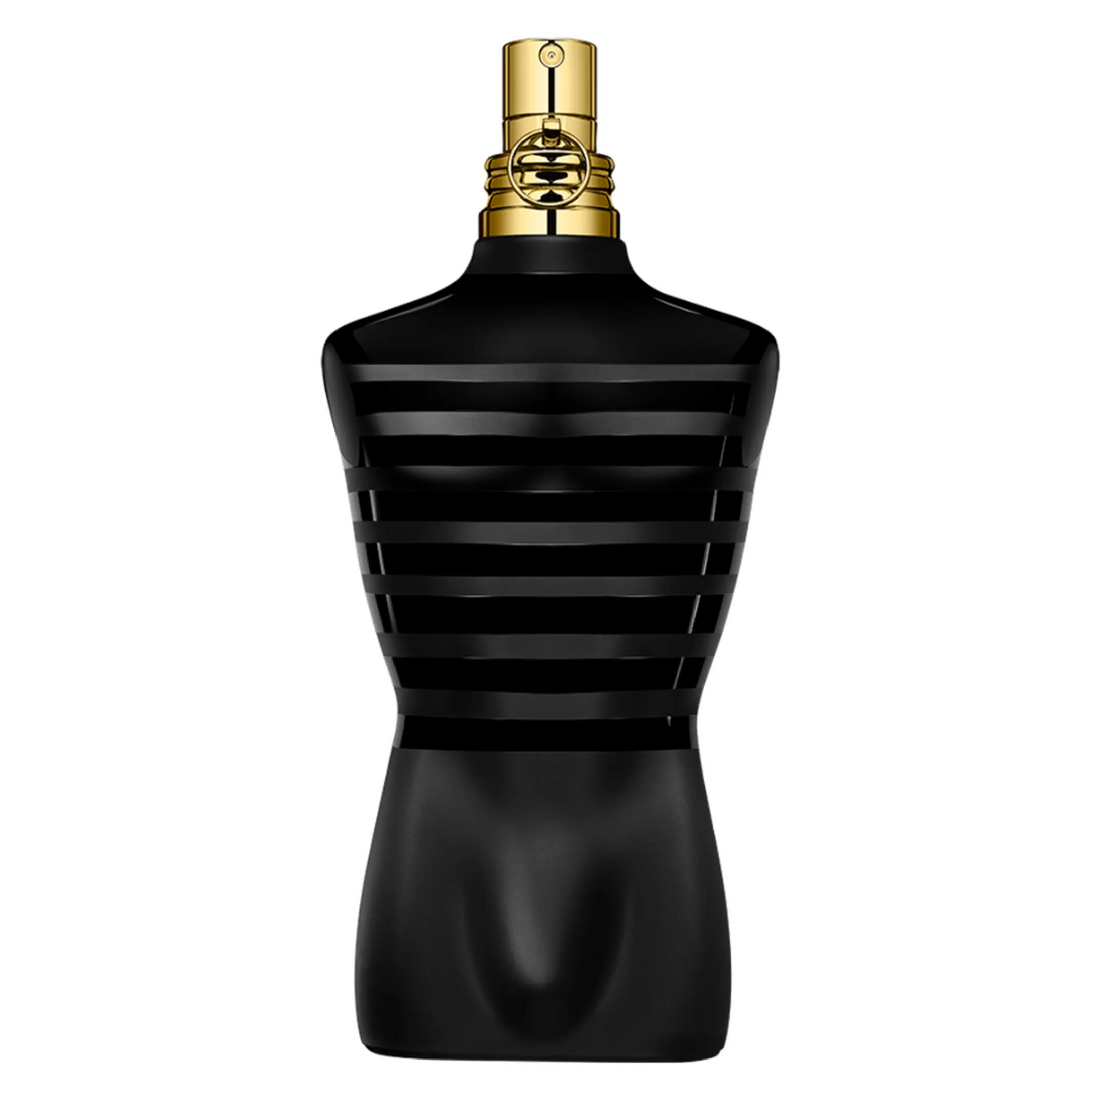 Jean Paul Gaultier Le Male Le Parfum for Men 125ML